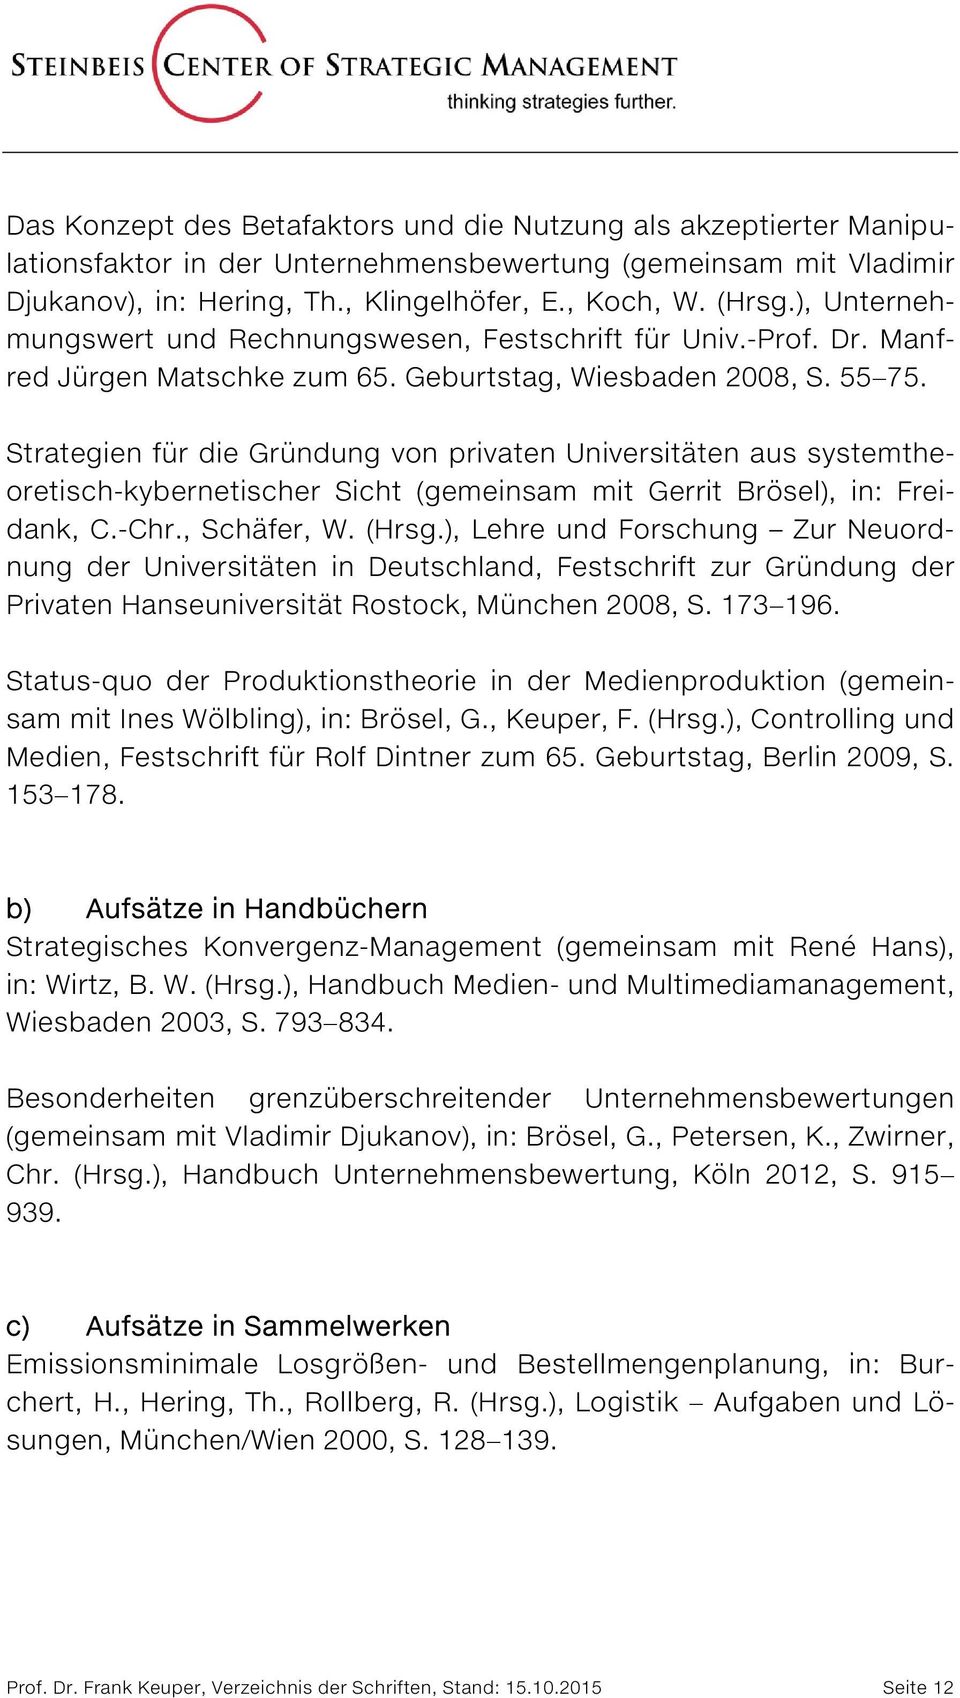 Strategien für die Gründung von privaten Universitäten aus systemtheoretisch-kybernetischer Sicht (gemeinsam mit Gerrit Brösel), in: Freidank, C.-Chr., Schäfer, W. (Hrsg.